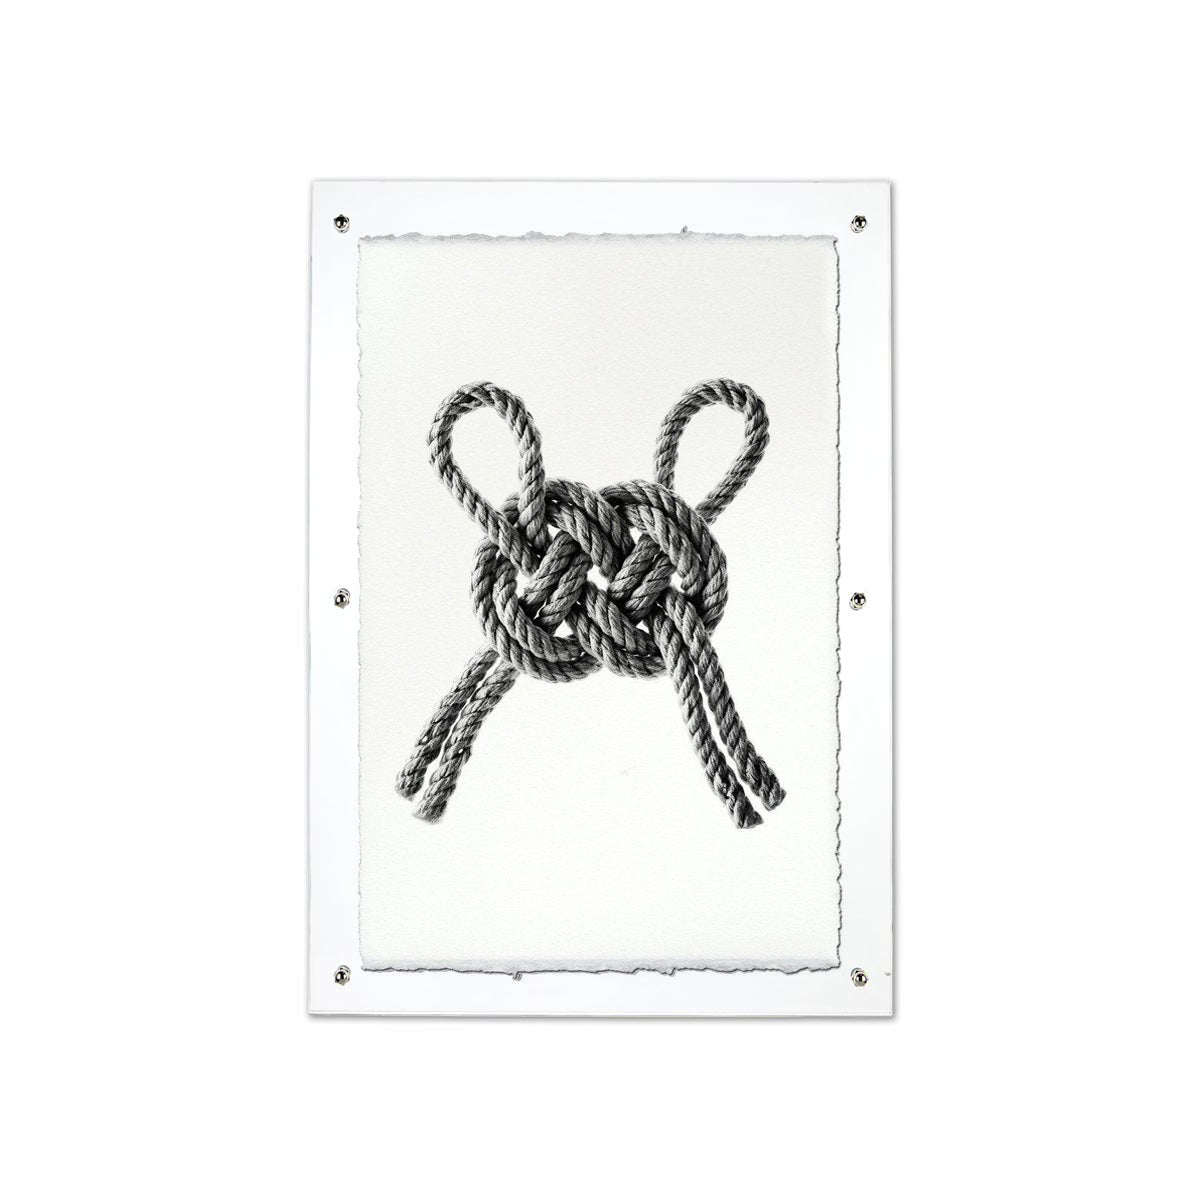 Carrick Double Bend Nautical Knot framed handmade paper wall art print 20"x30"